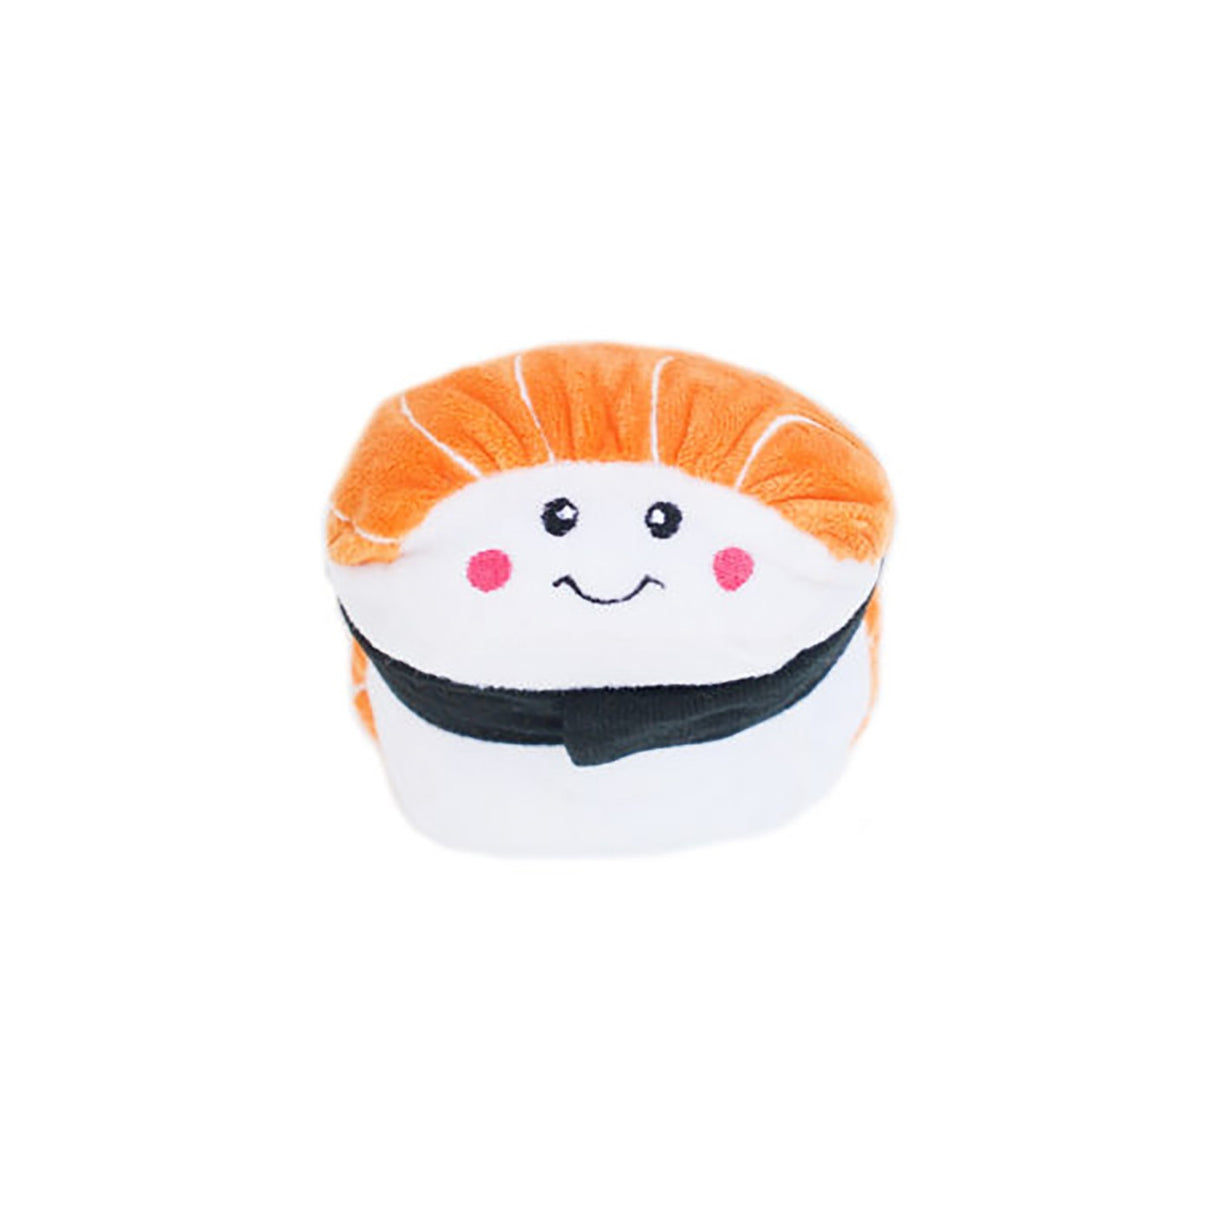 ZippyPaws NomNomz Sushi